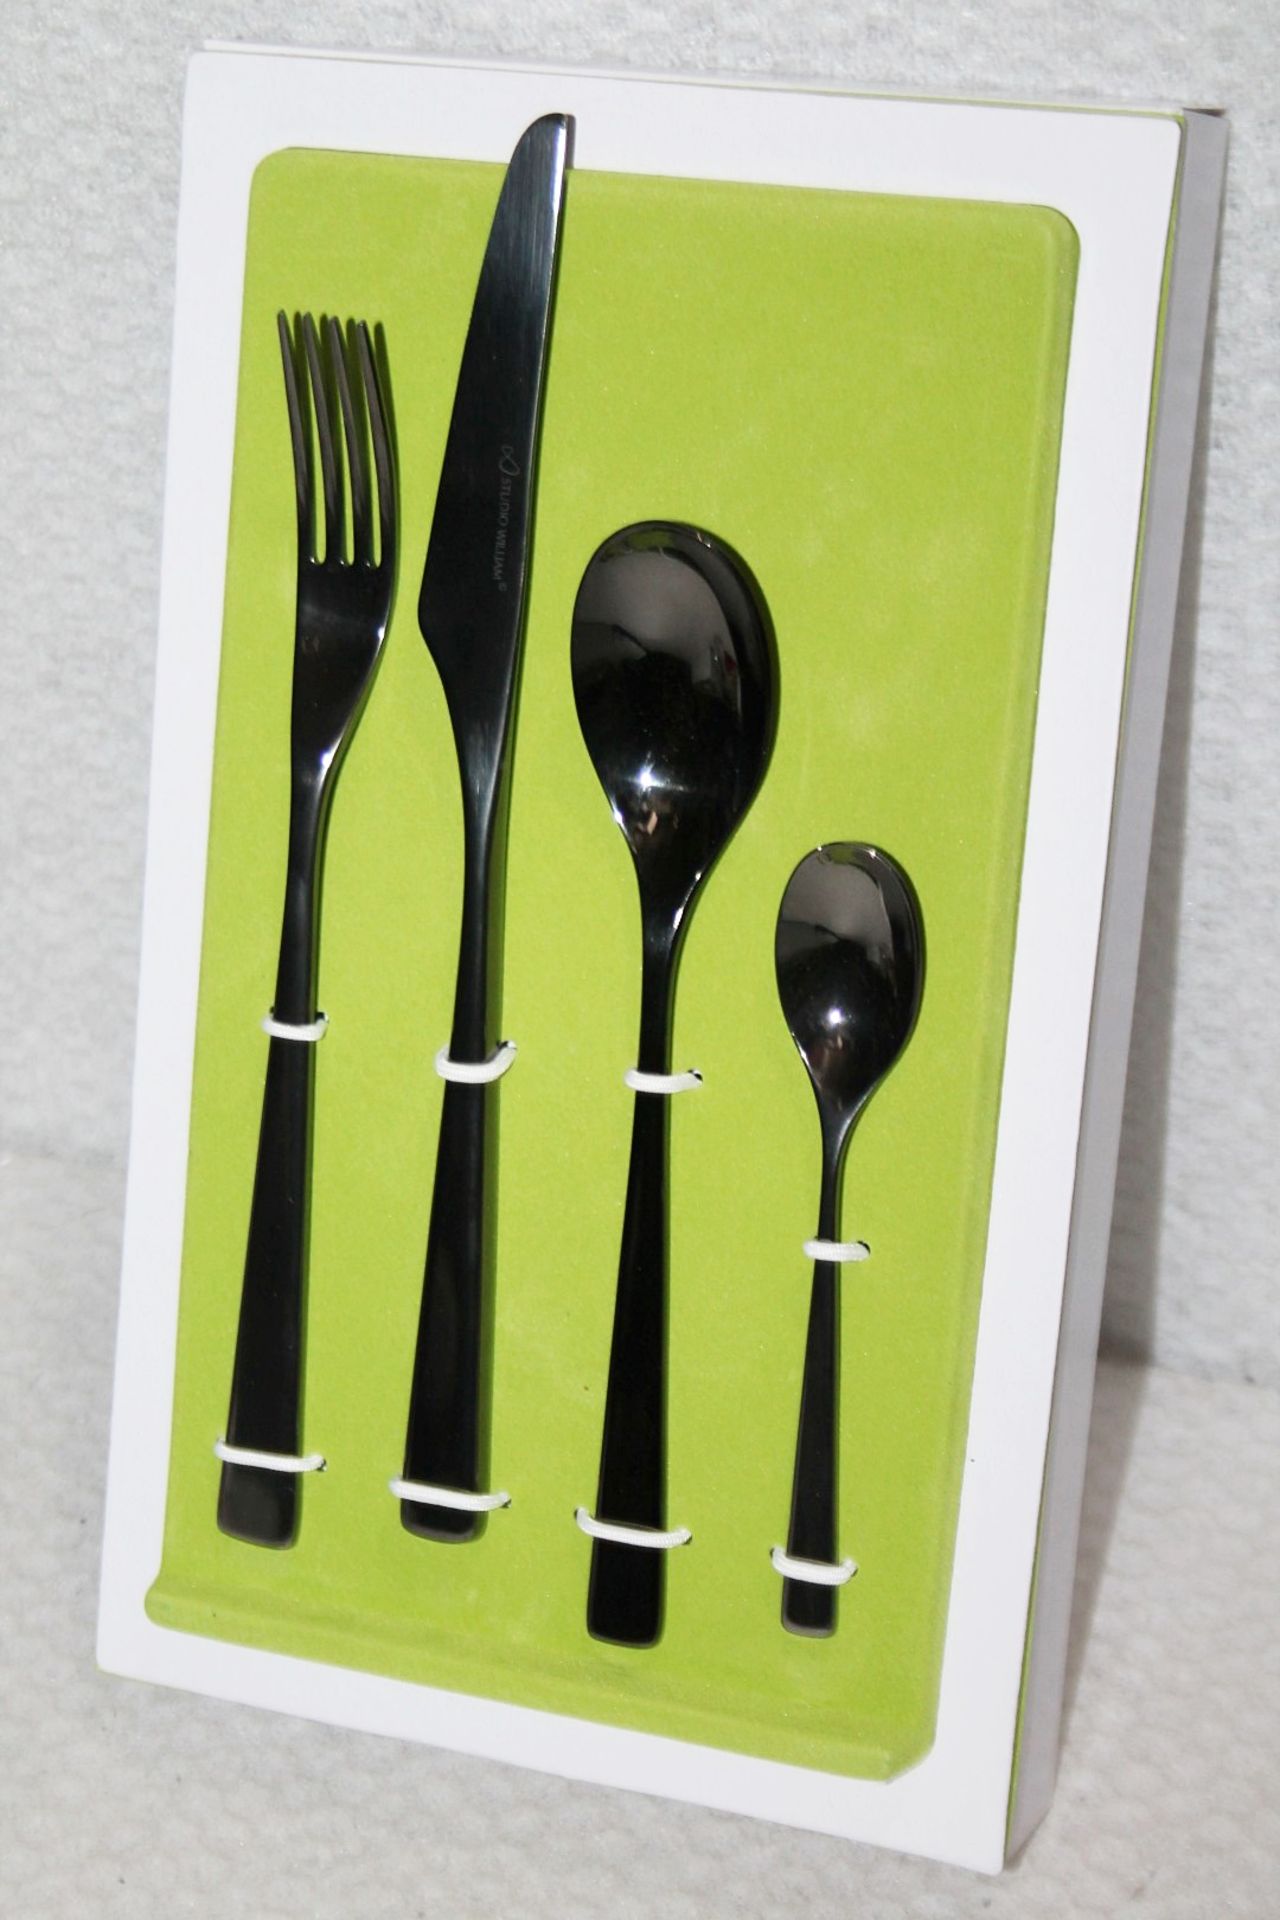 1 x STUDIO WILLIAM 'Tilia Obsidian' 56-Piece Cutlery Set - Original Price £930.00 - Unused Boxed - Image 3 of 11